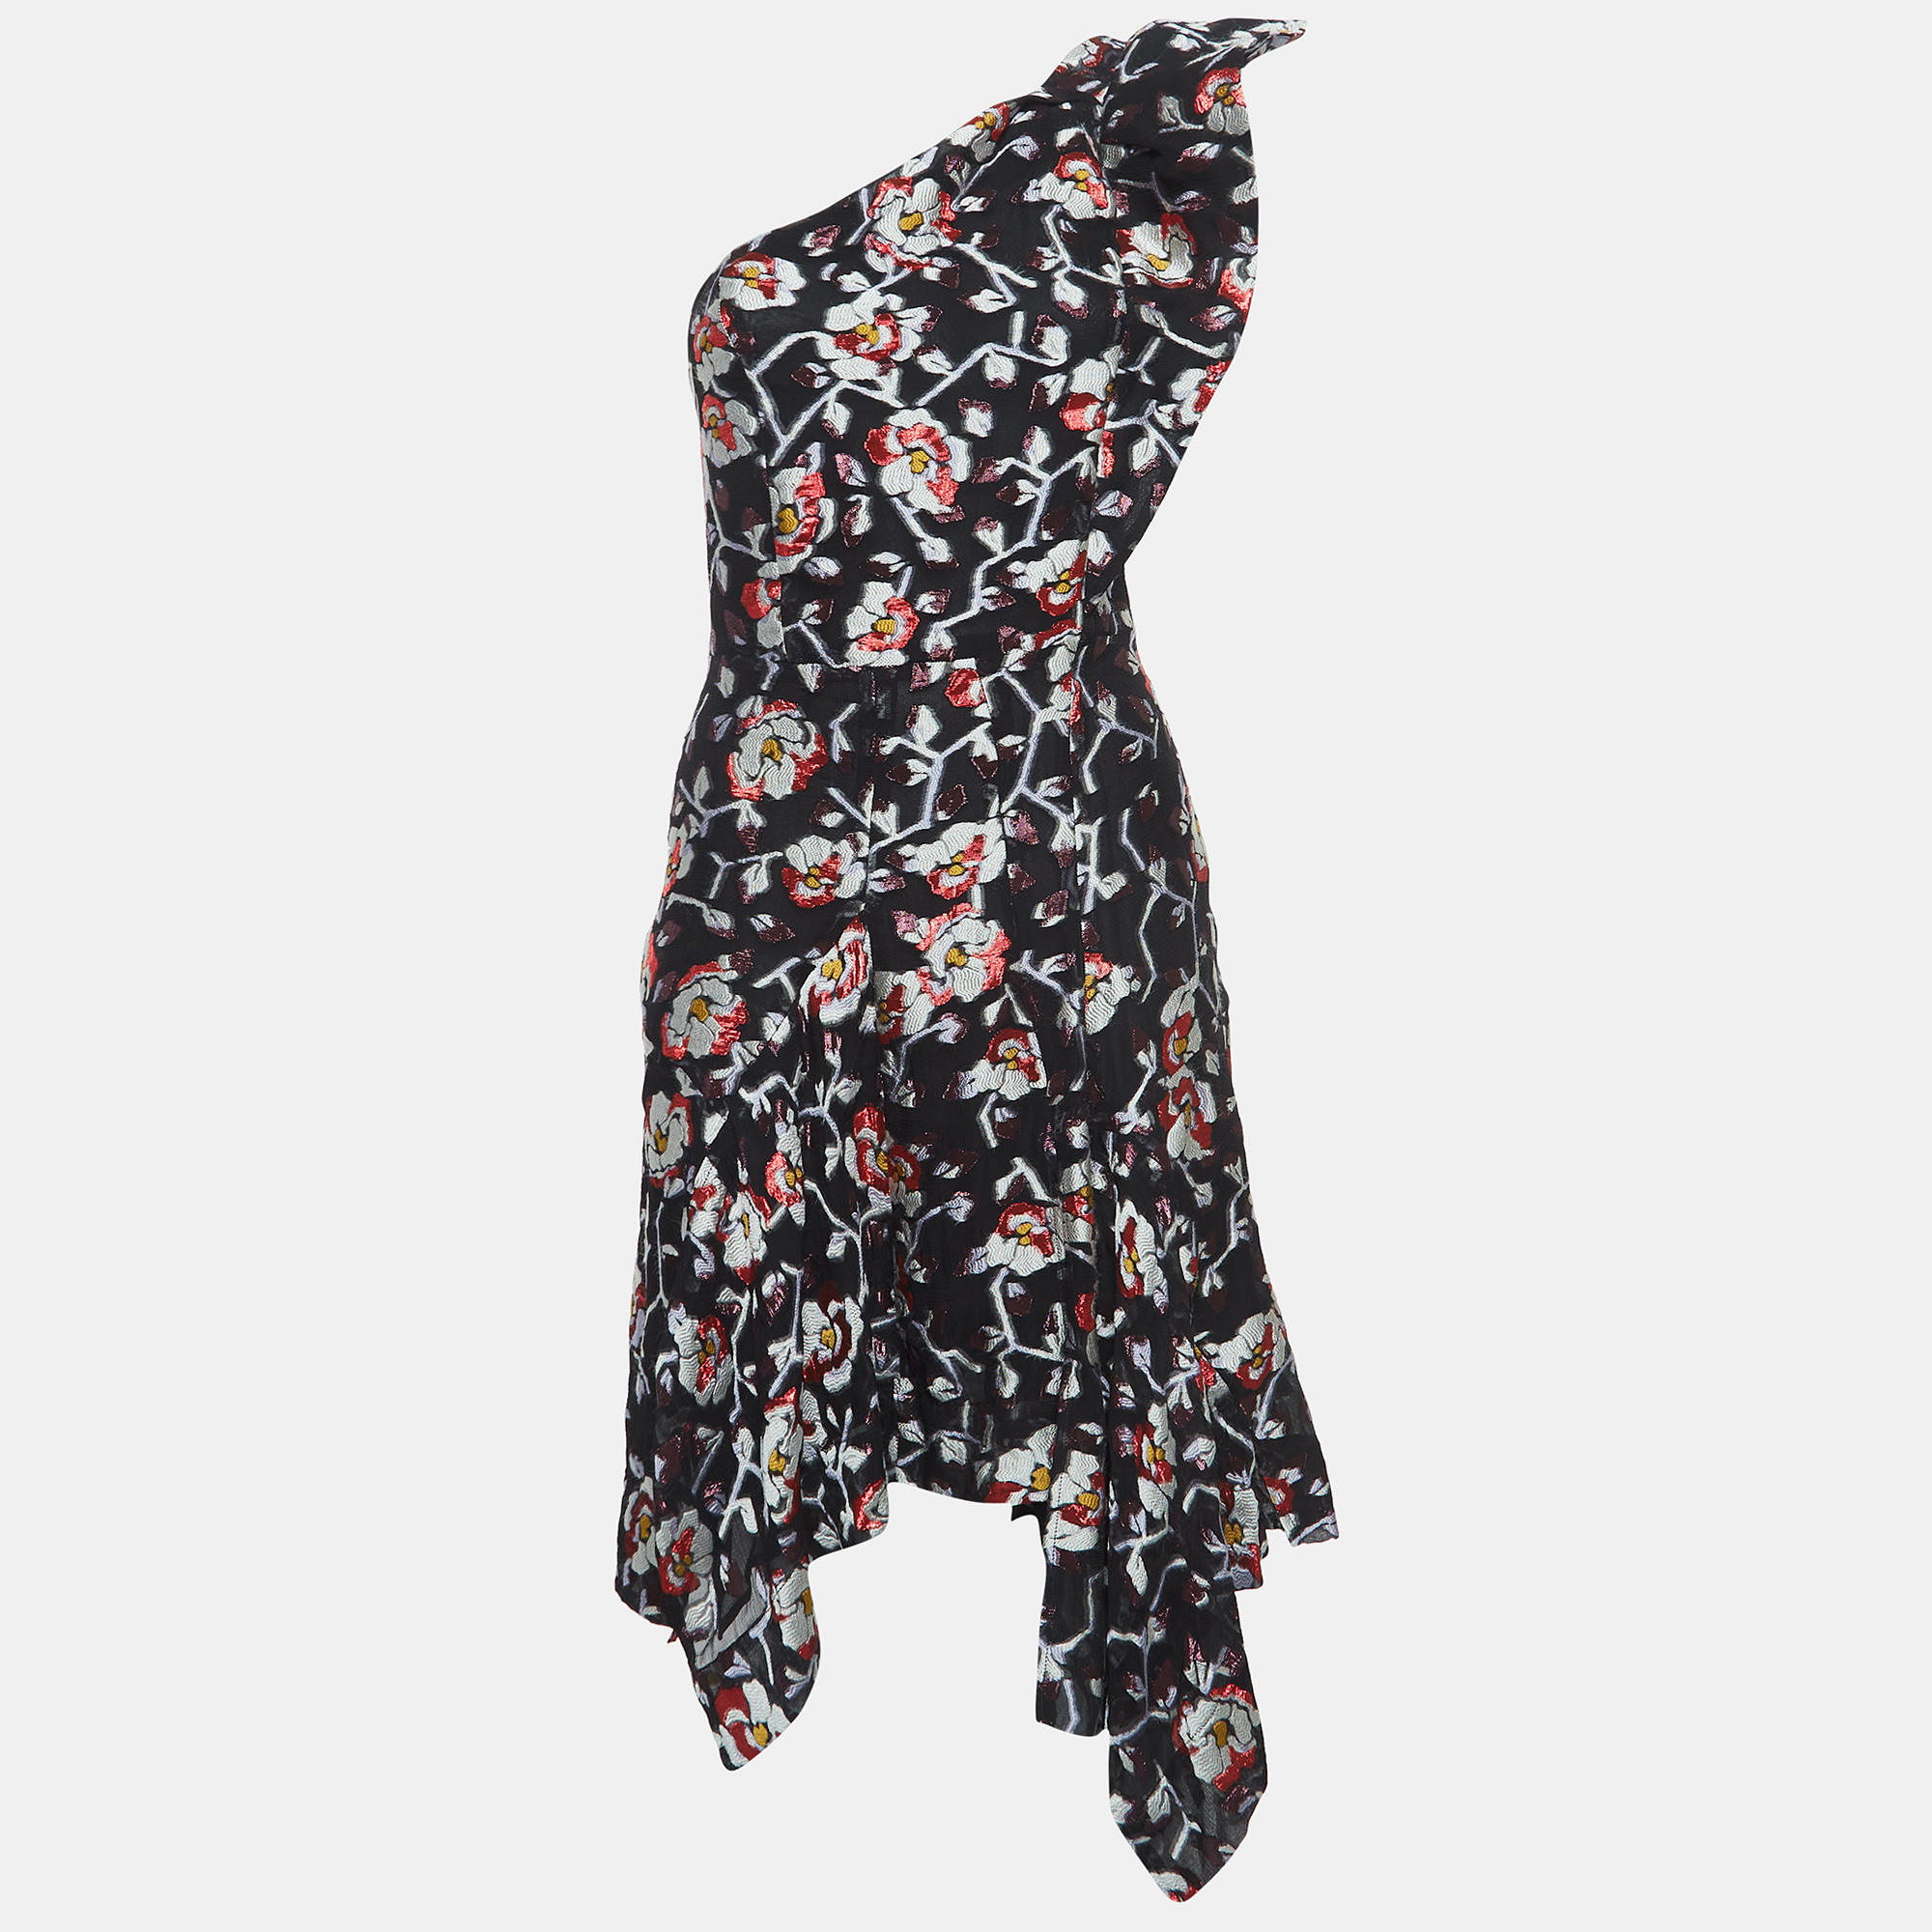 Isabel marant black floral detailed silk blend short dress s